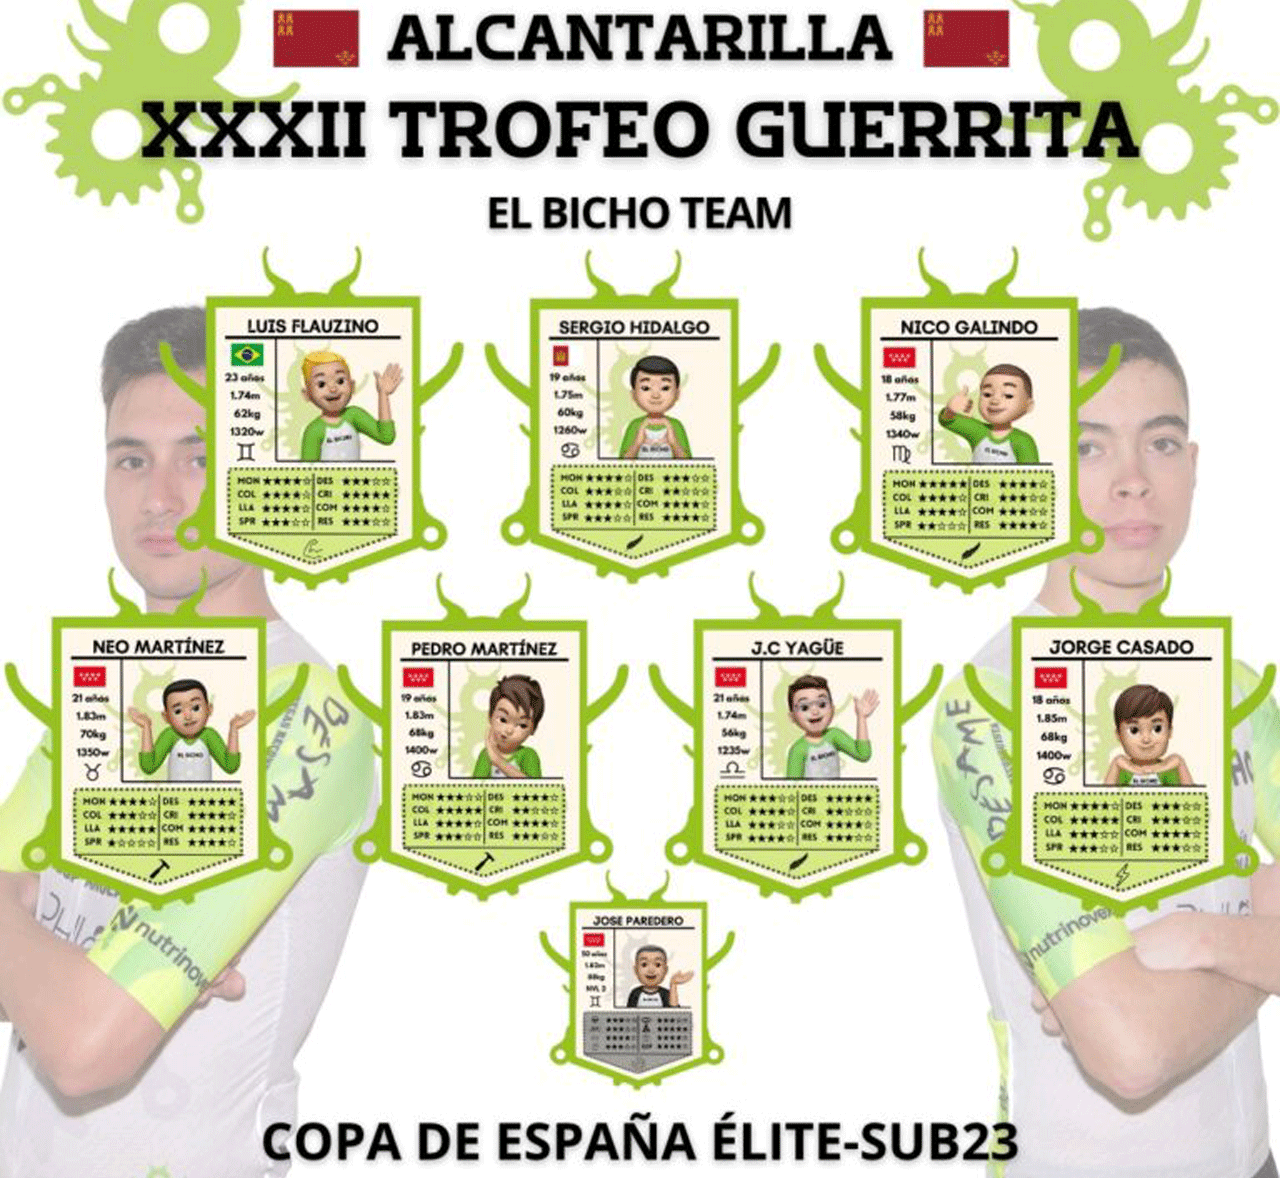 Cartel de la participación de El Bicho Team en el XXXII Trofeo Guerrita